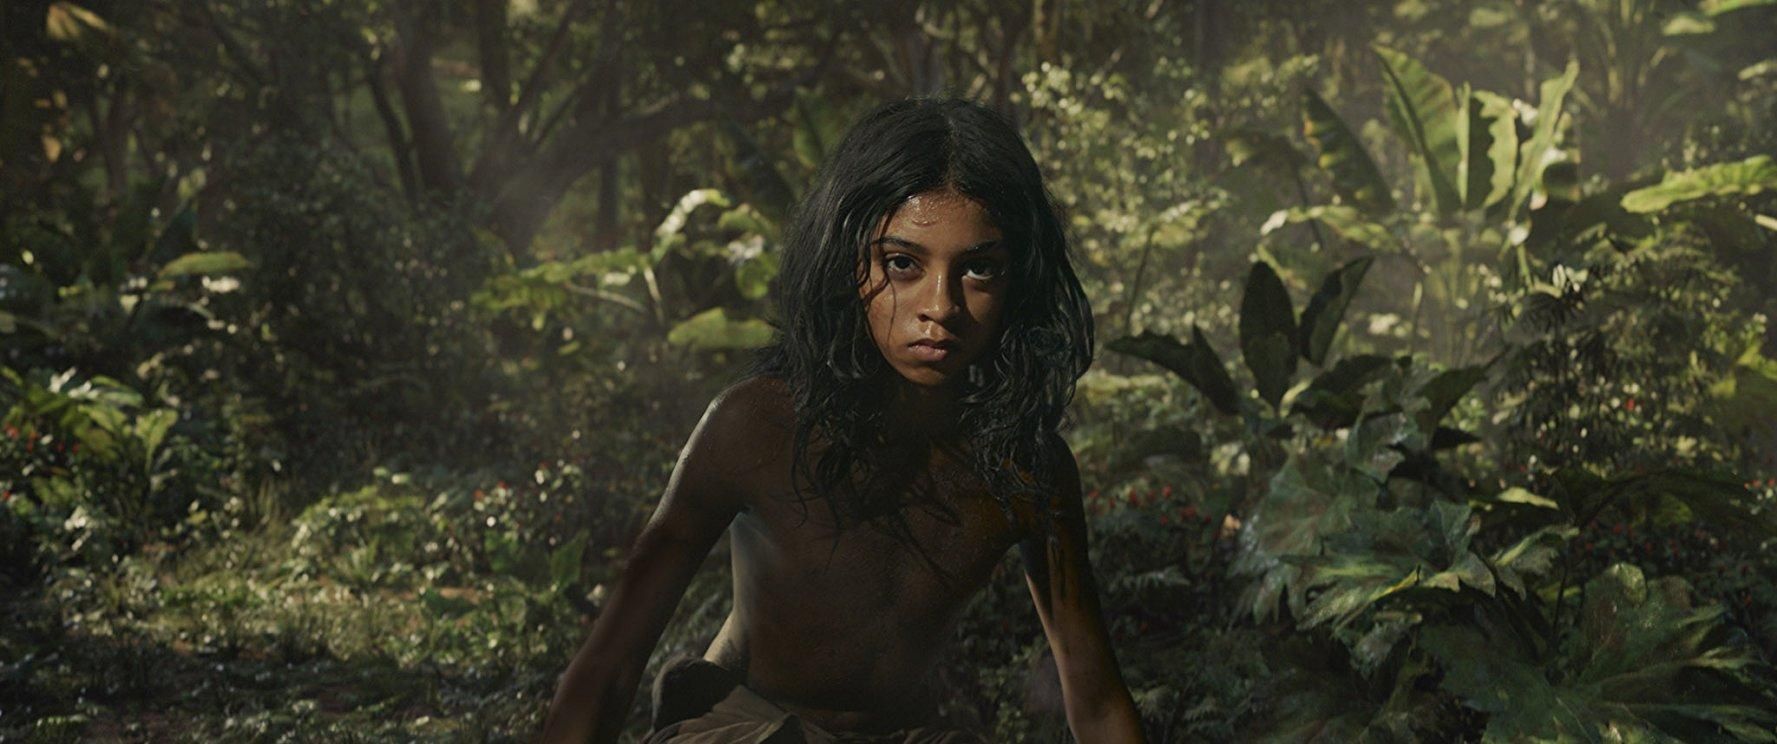 Фільм "Мауглі": в мережі з'явився офіційний трейлер від Netflix